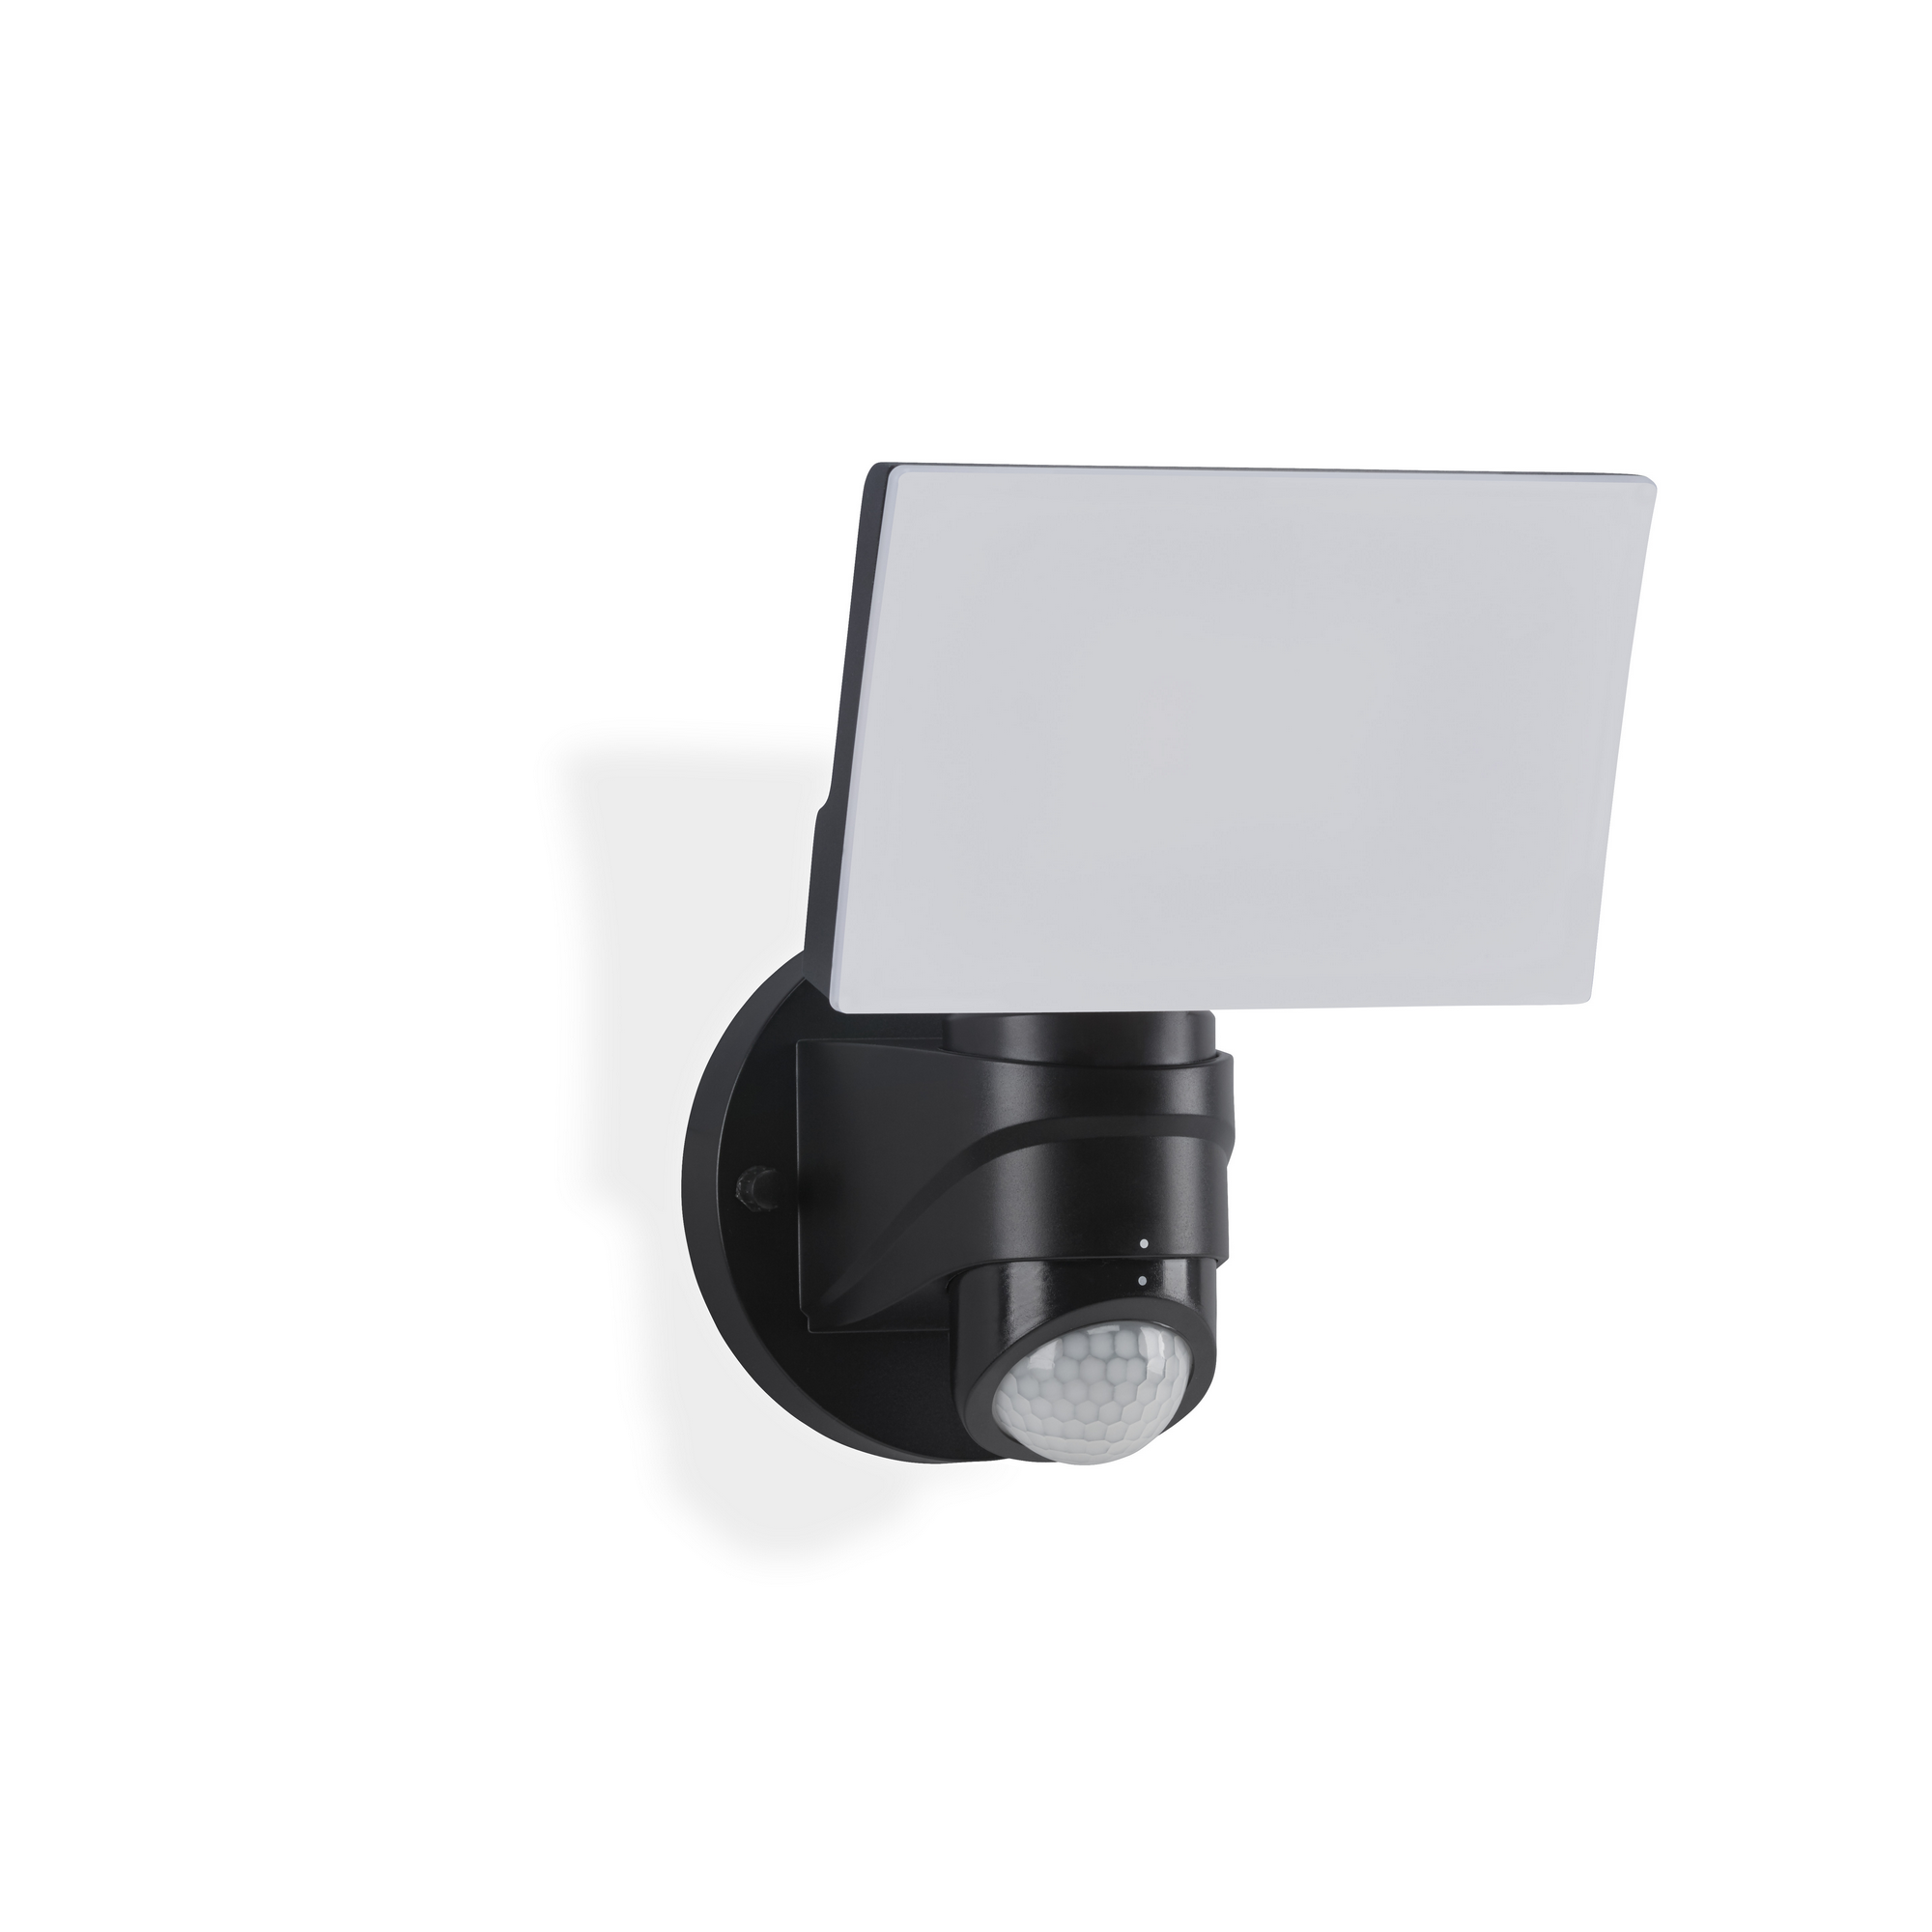 LED-Wandleuchte 'Cristo' schwarz 1600 lm mit Bewegungsmelder + product picture